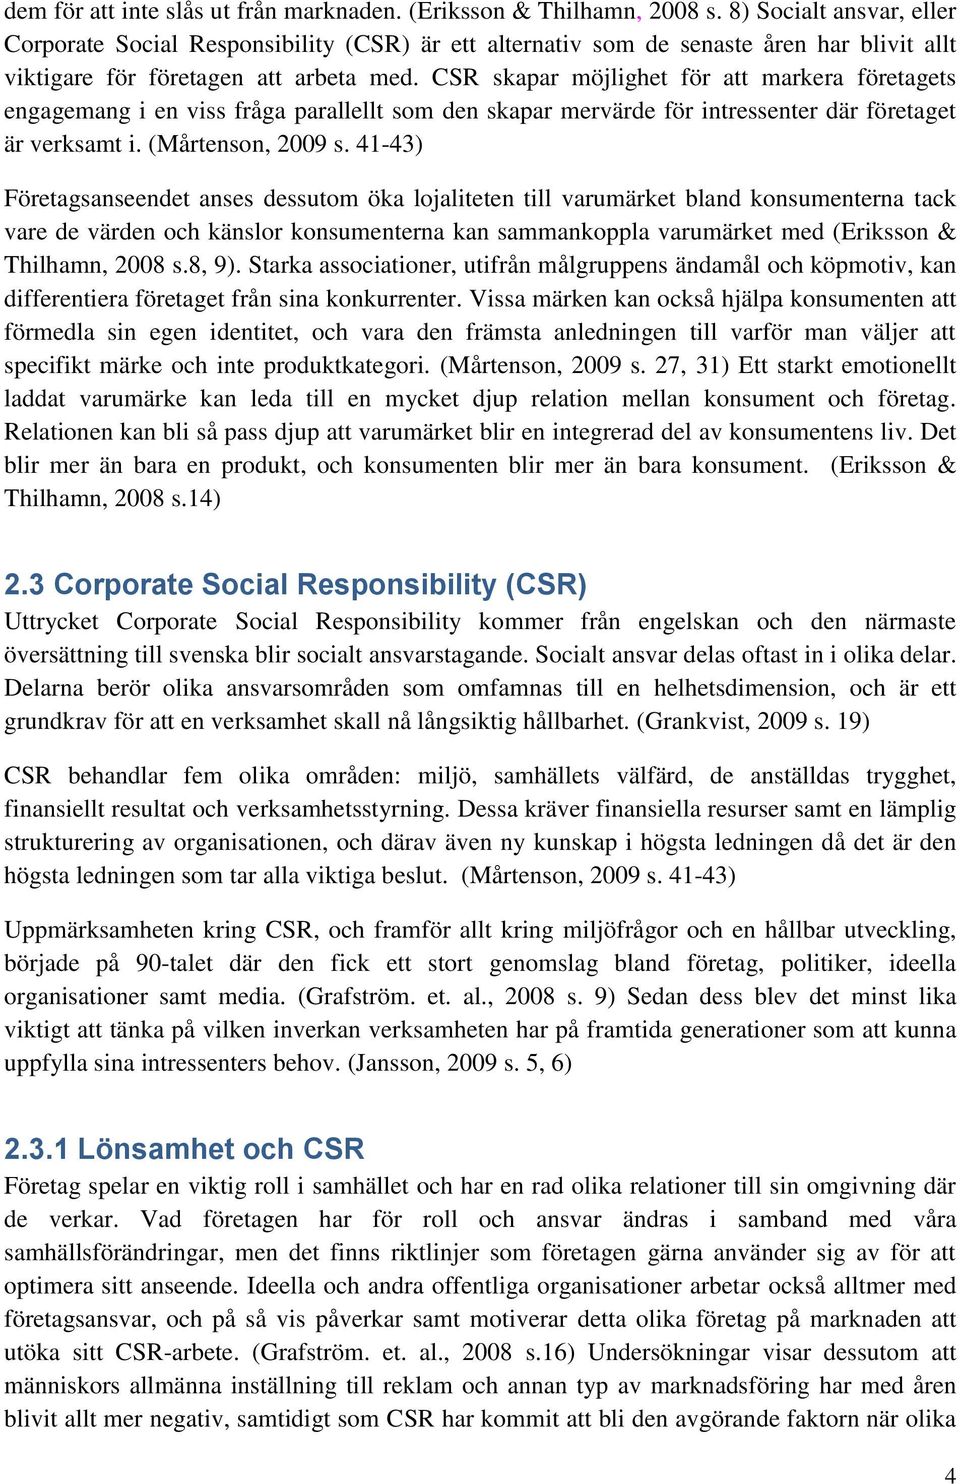 CSR skapar möjlighet för att markera företagets engagemang i en viss fråga parallellt som den skapar mervärde för intressenter där företaget är verksamt i. (Mårtenson, 2009 s.